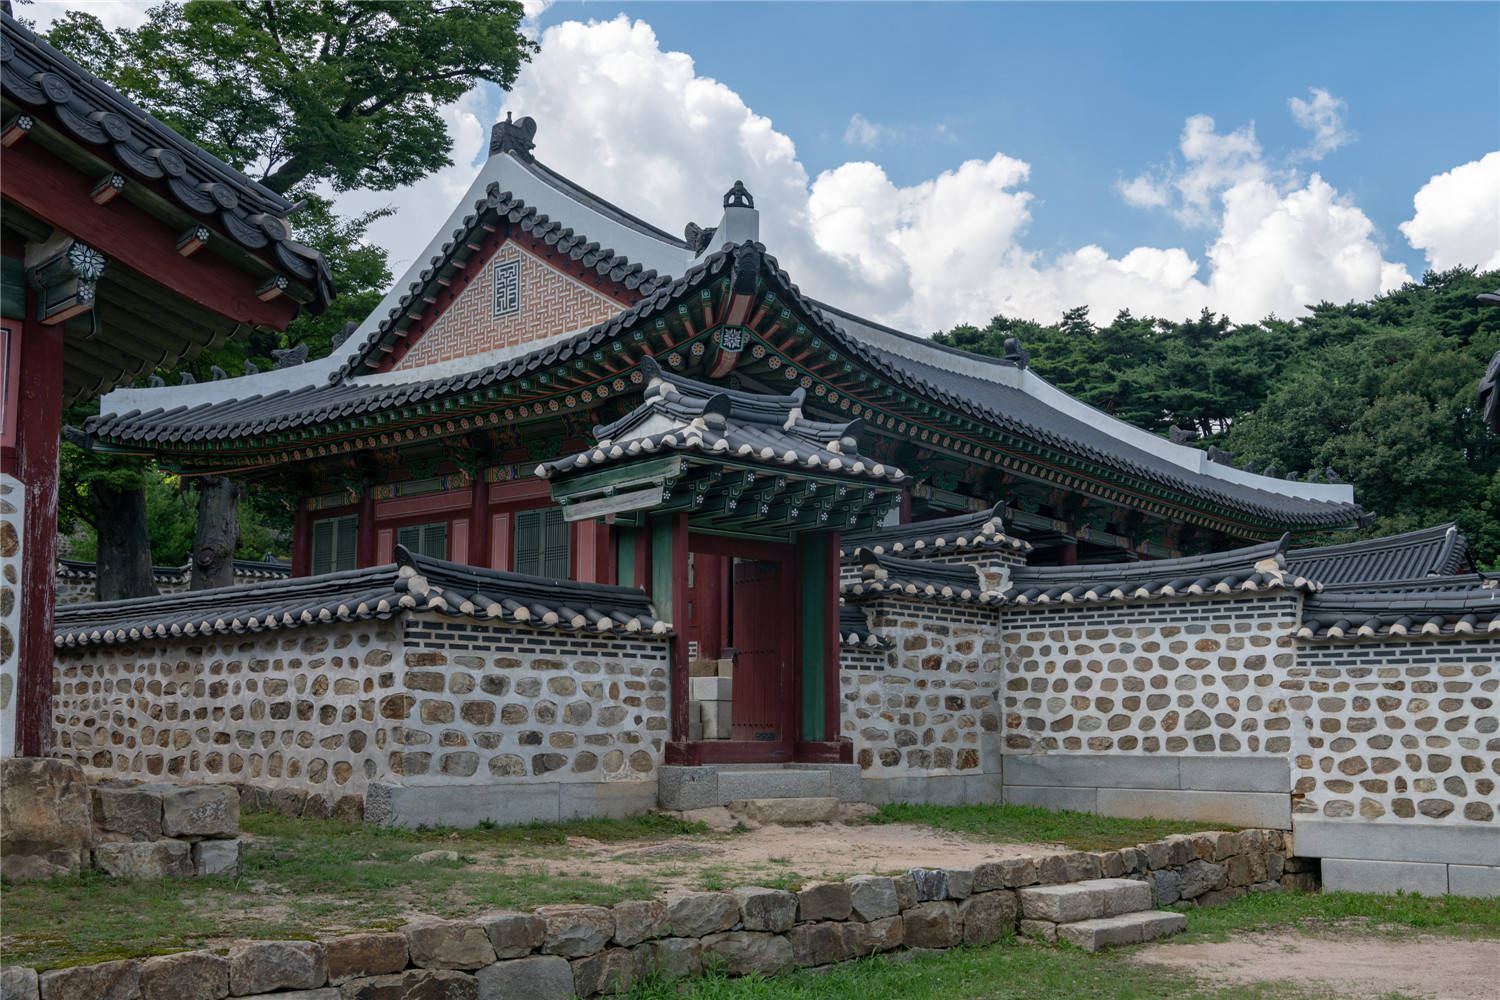 原创2千多年的韩国古城：充满着浓厚的中国味道，连牌匾都是汉字